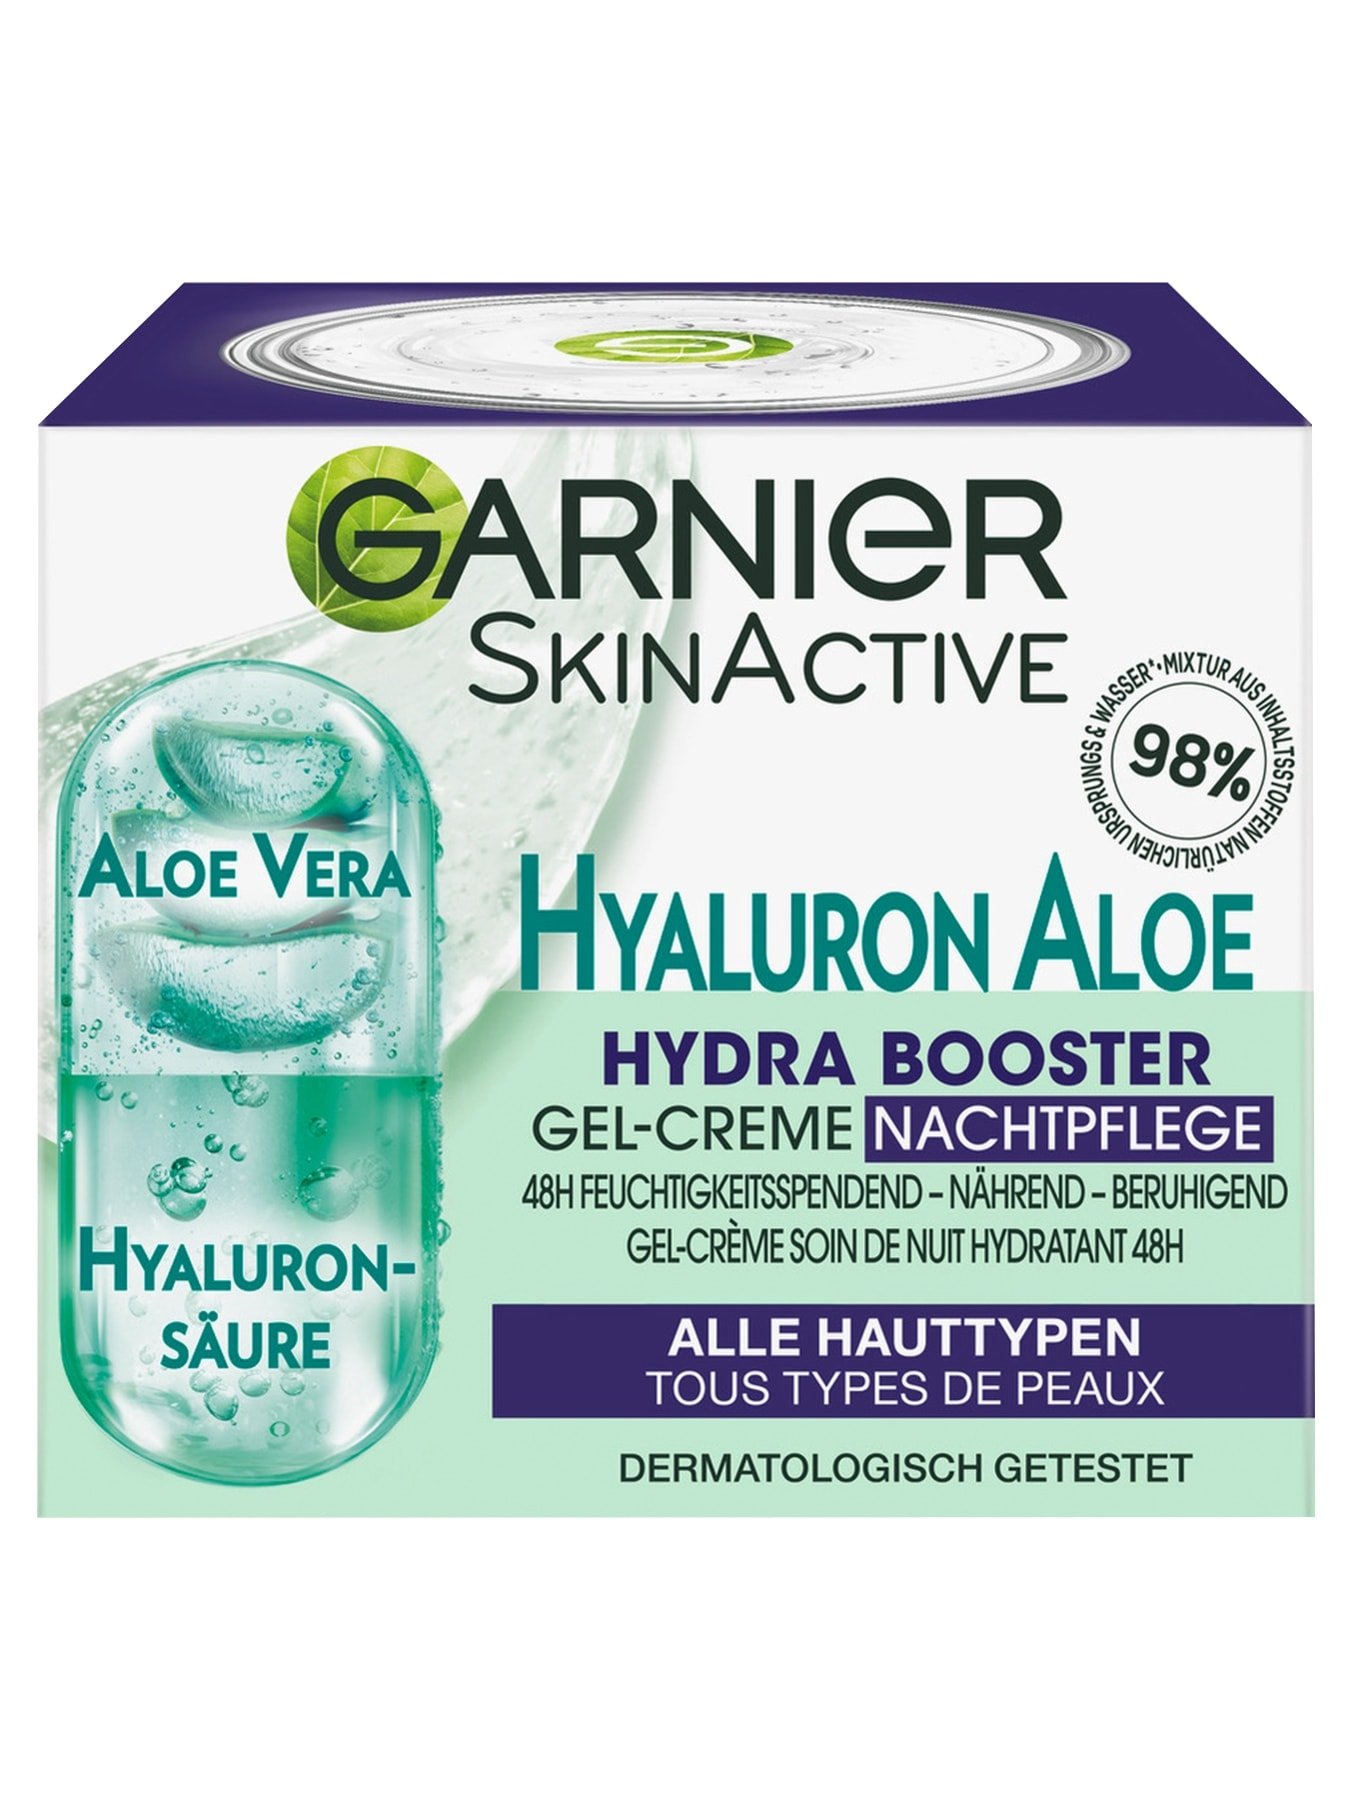 Hyaluron Aloe Hydra Booster Gel-Creme | Nachtpflege Garnier